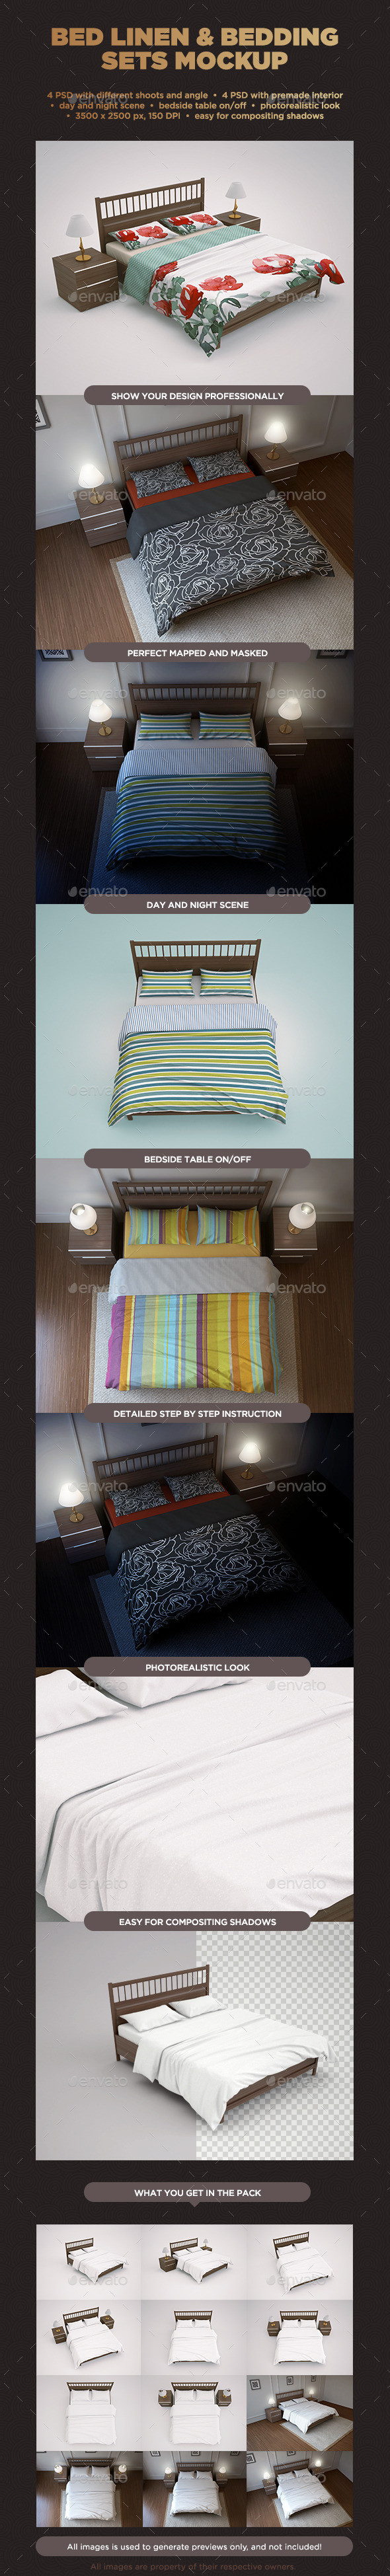 Bed linen   bedding sets mockup by goner13